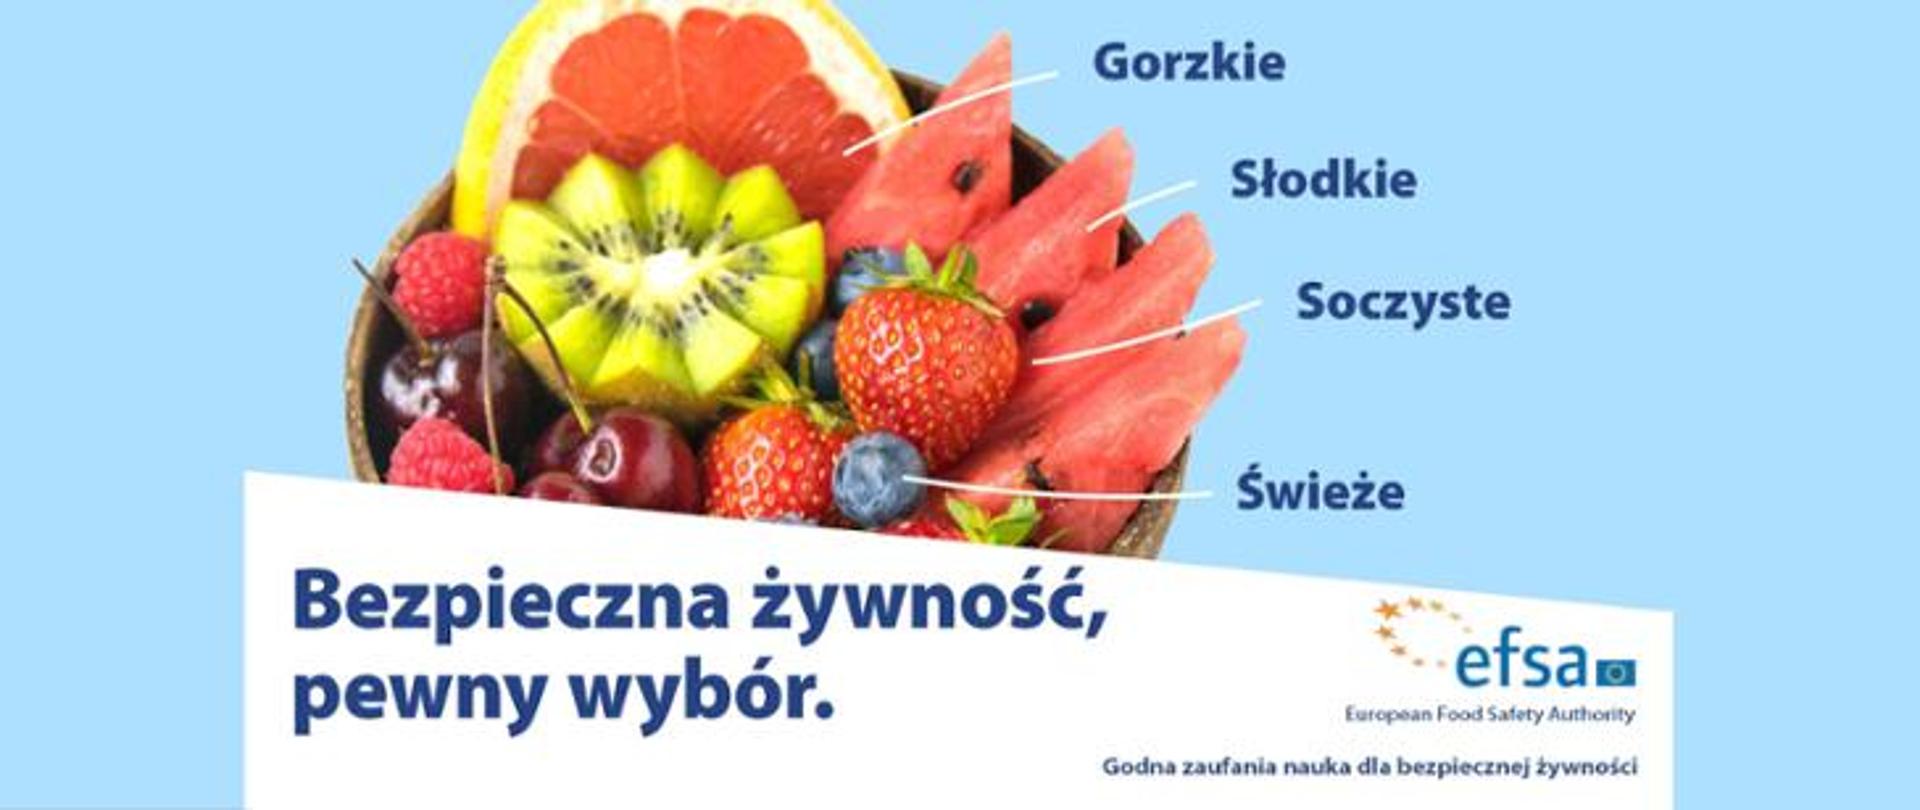 Na niebieskim tle w misce owoce: arbuz, grejpfrut, maliny, truskawki, wiśnie, kiwi, borówki. Do owoców przypisano ich smaki: gorzkie (grejpfrut), słodkie (arbuz), soczyste (truskawki), świeże (borówki) - napis koloru granatowego. Na białym tle poniżej owoców widnieje napis " Bezpieczna żywność, pewny wybór. Z prawej strony logo efsa. Godna zaufania nauka dla bezpiecznej żywności.